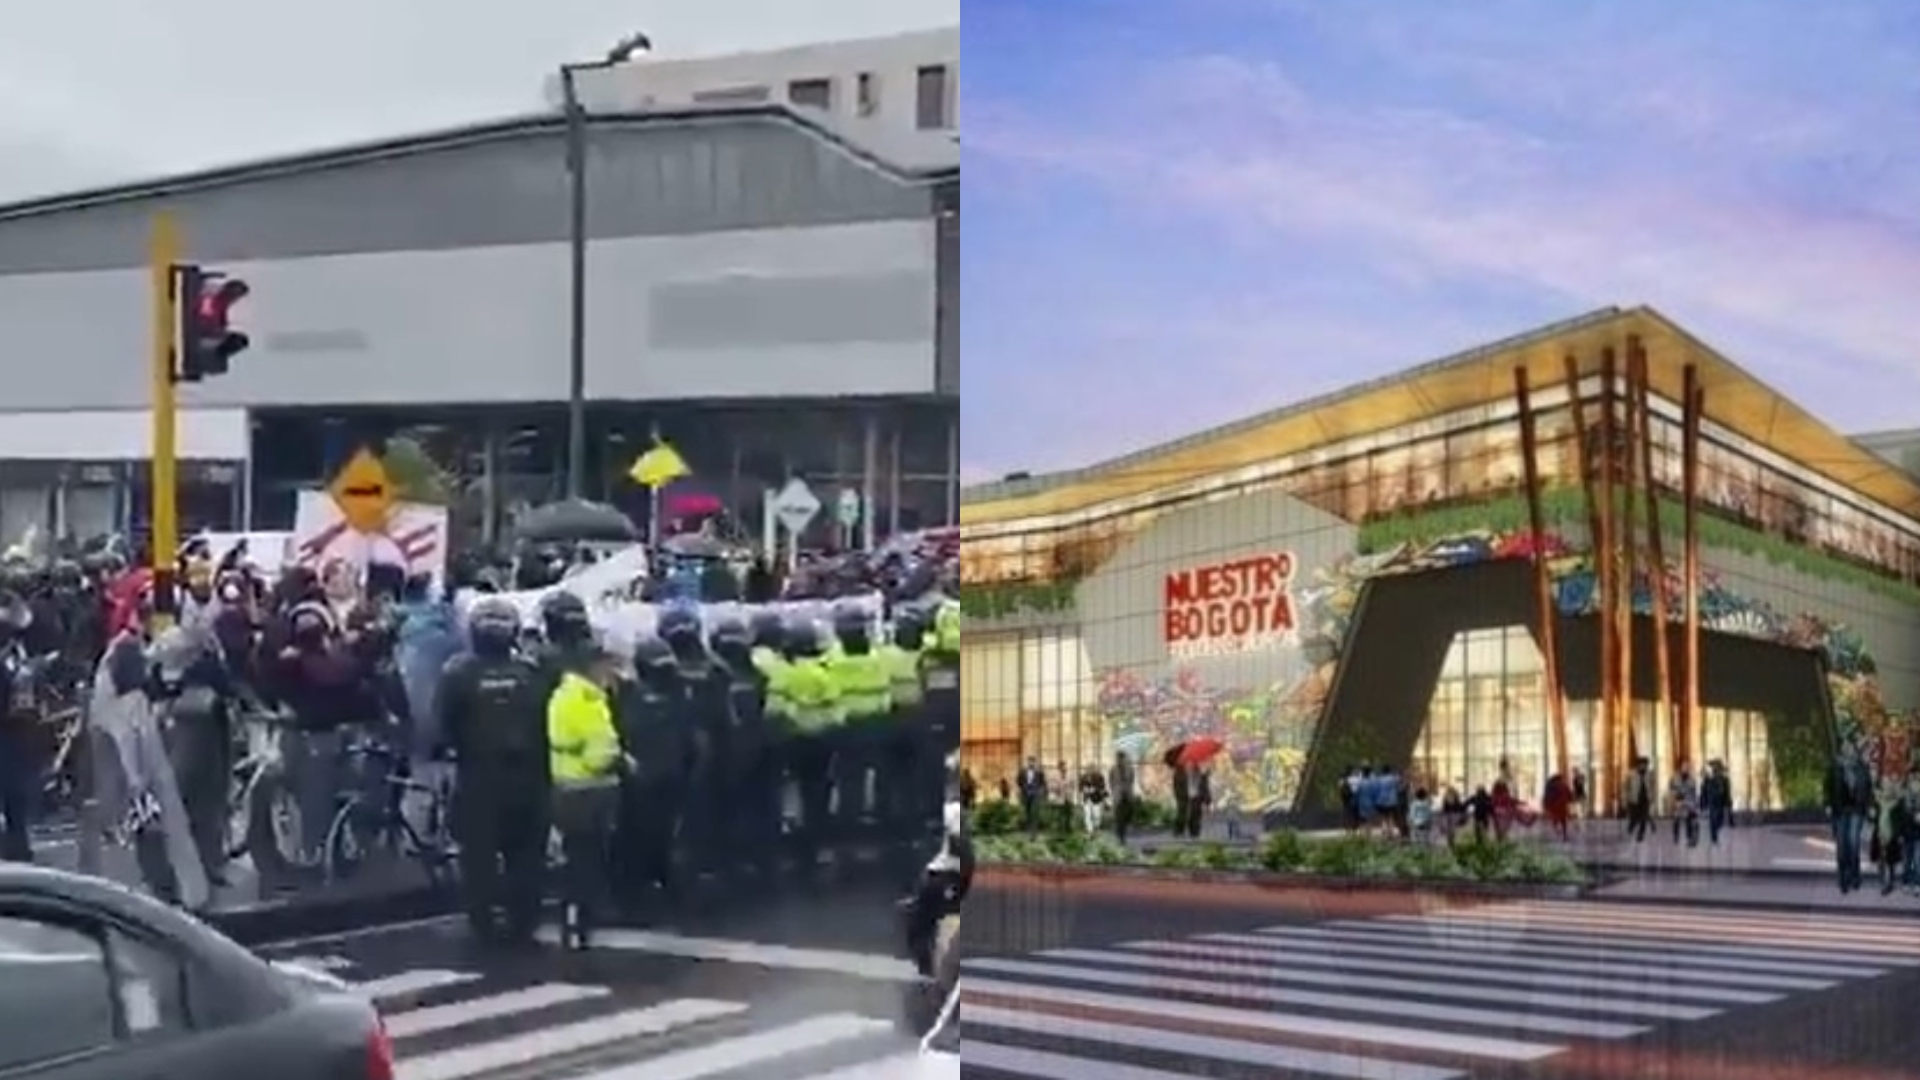 De quién es y cuánto costó el nuevo centro comercial de los hijos de Uribe que se convirtió en centro de las protestas en Bogotá